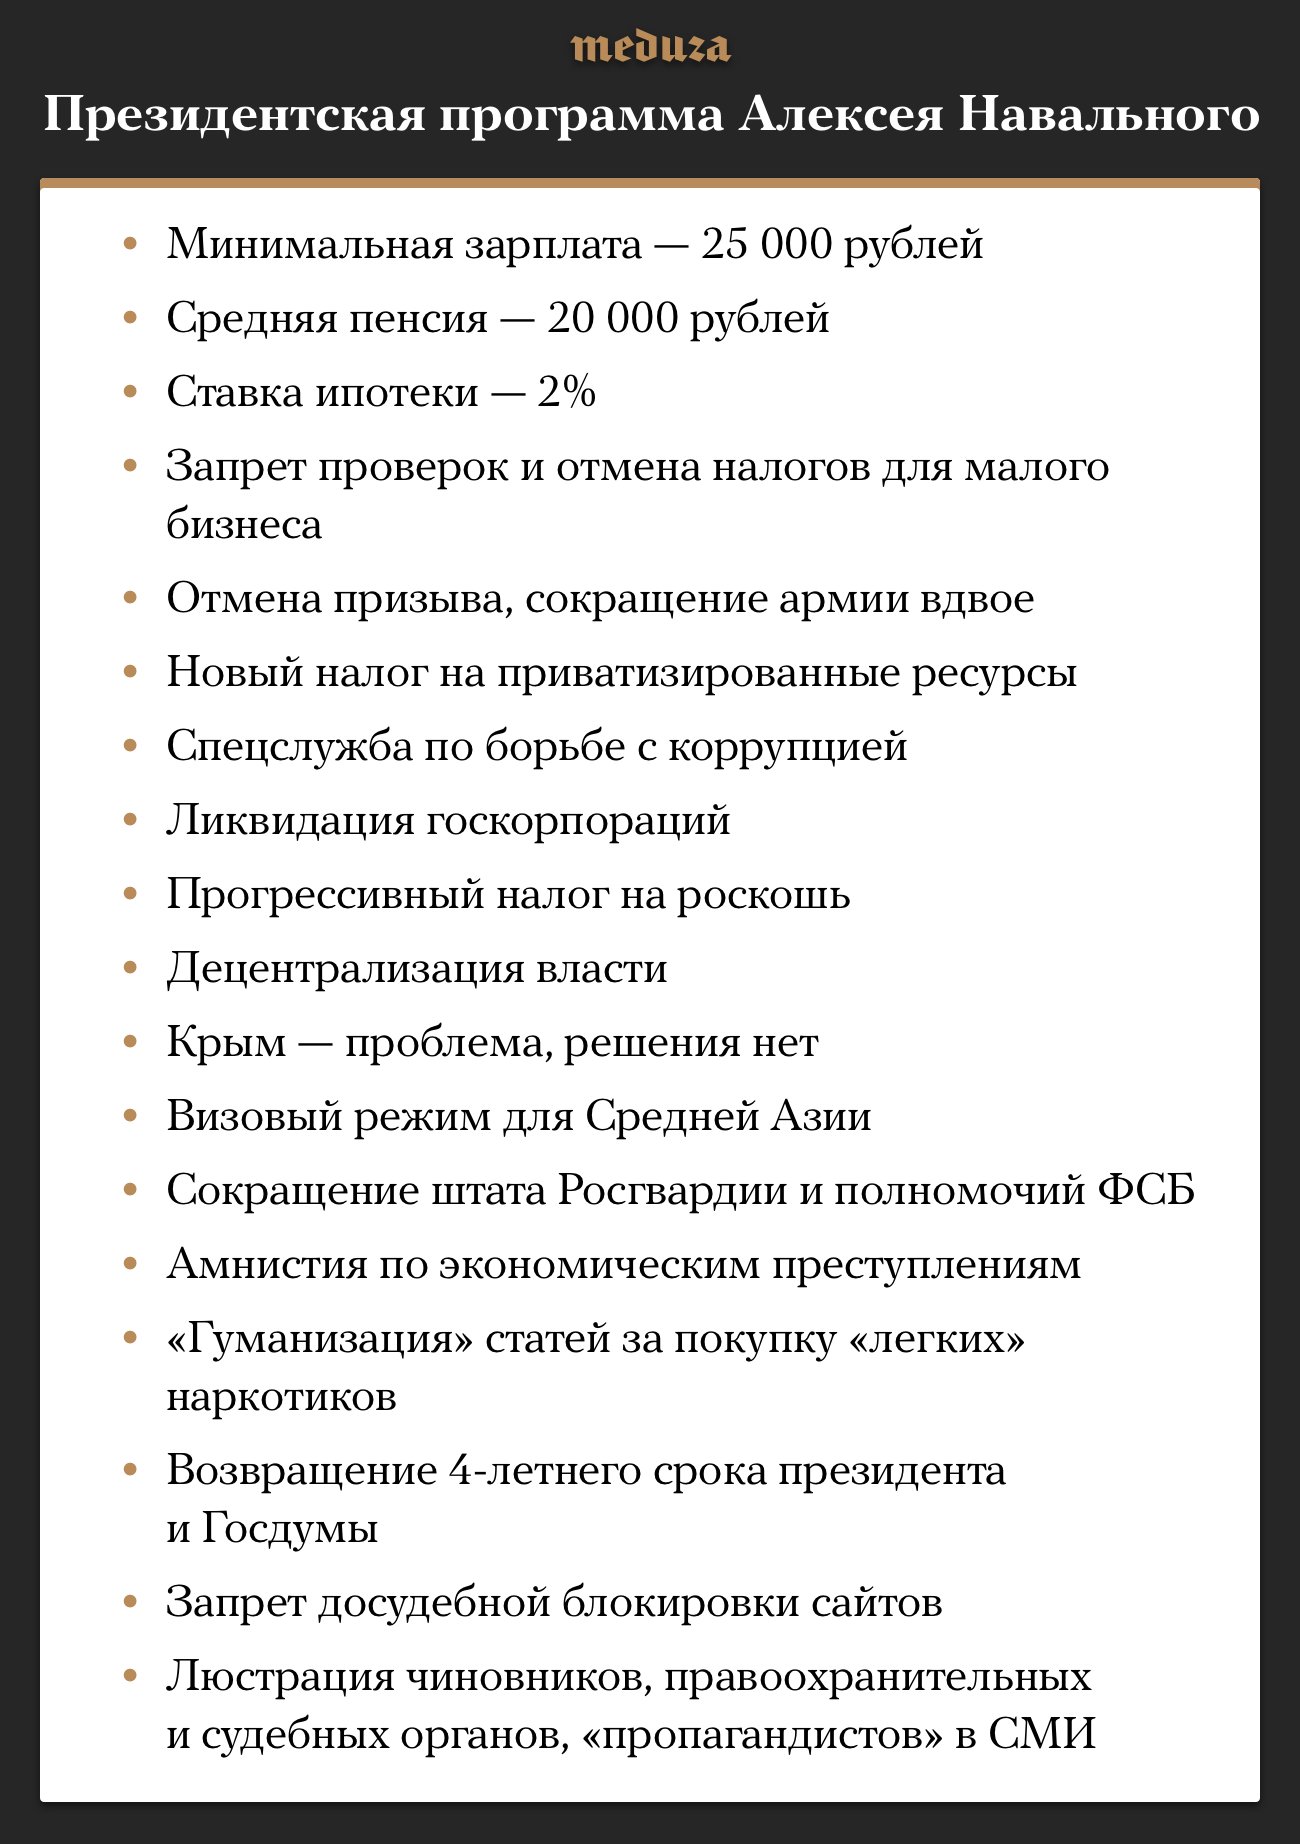 Программа навального кратко. Программа Навального. Предвыборная программа Навального. Президентская программа Алексея Навального 2018. Политическая программа Навального.